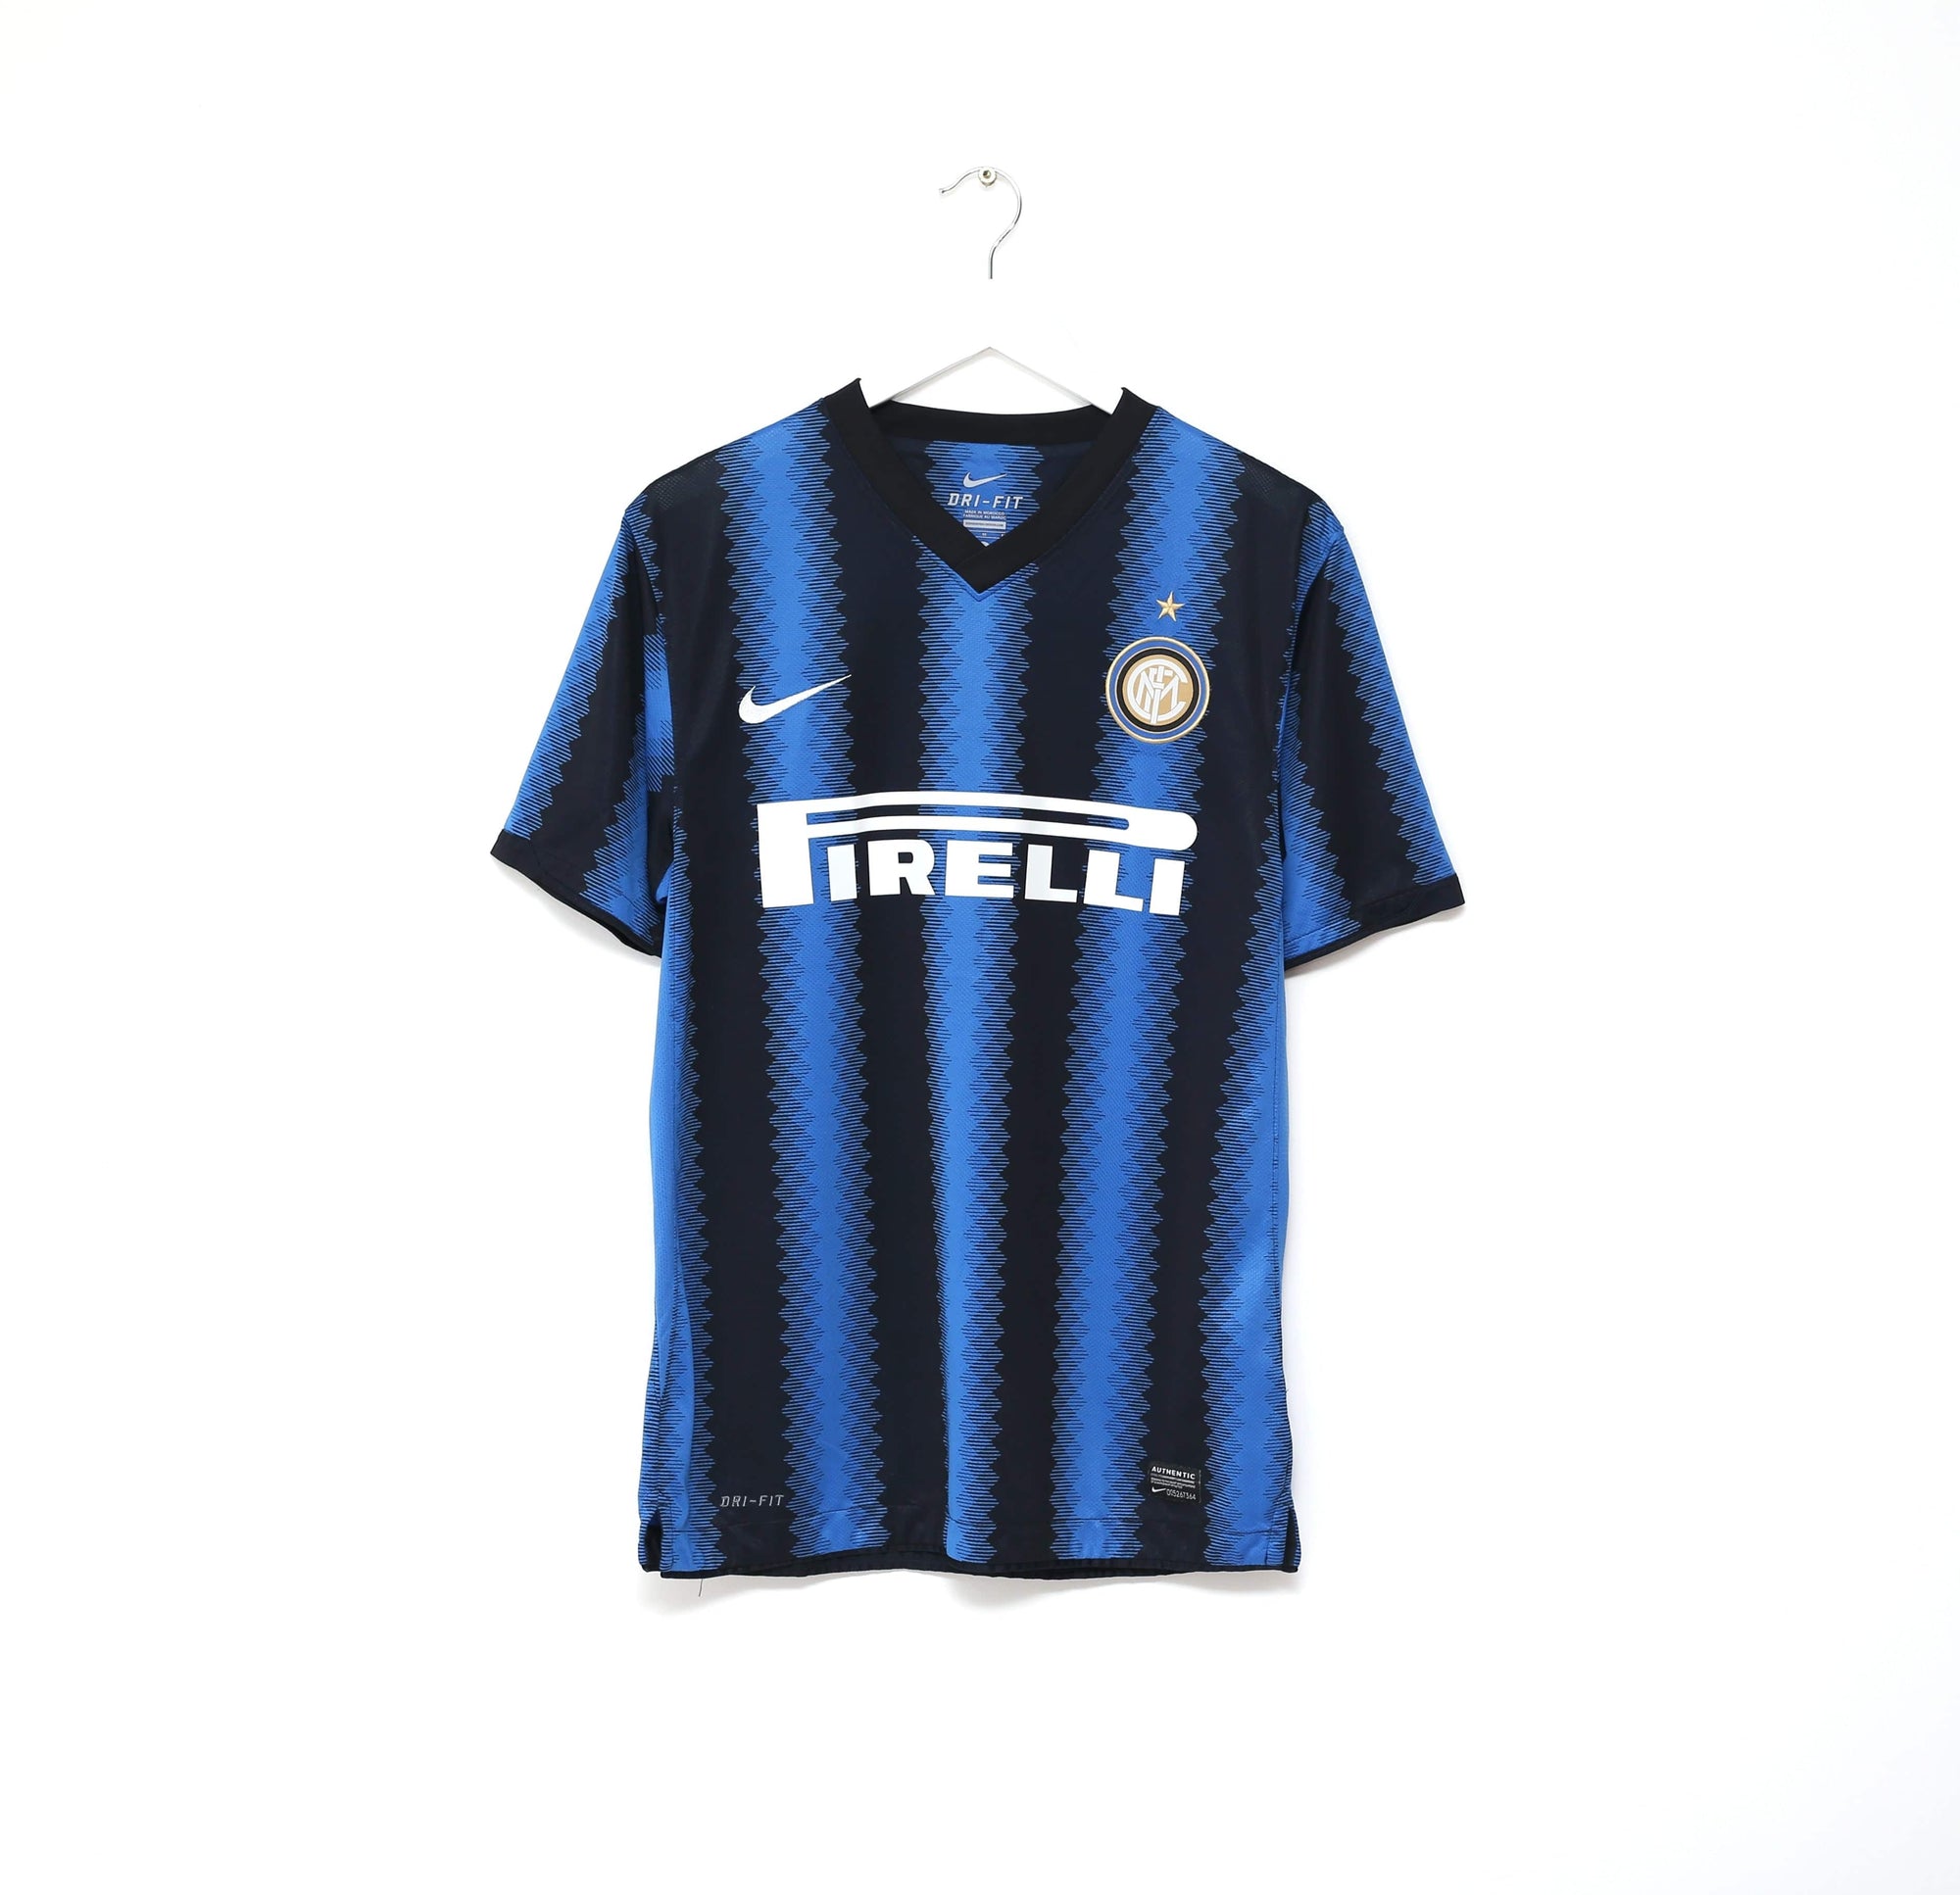 2010/11 INTER MILAN Vintage Nike Football Home Shirt (M)